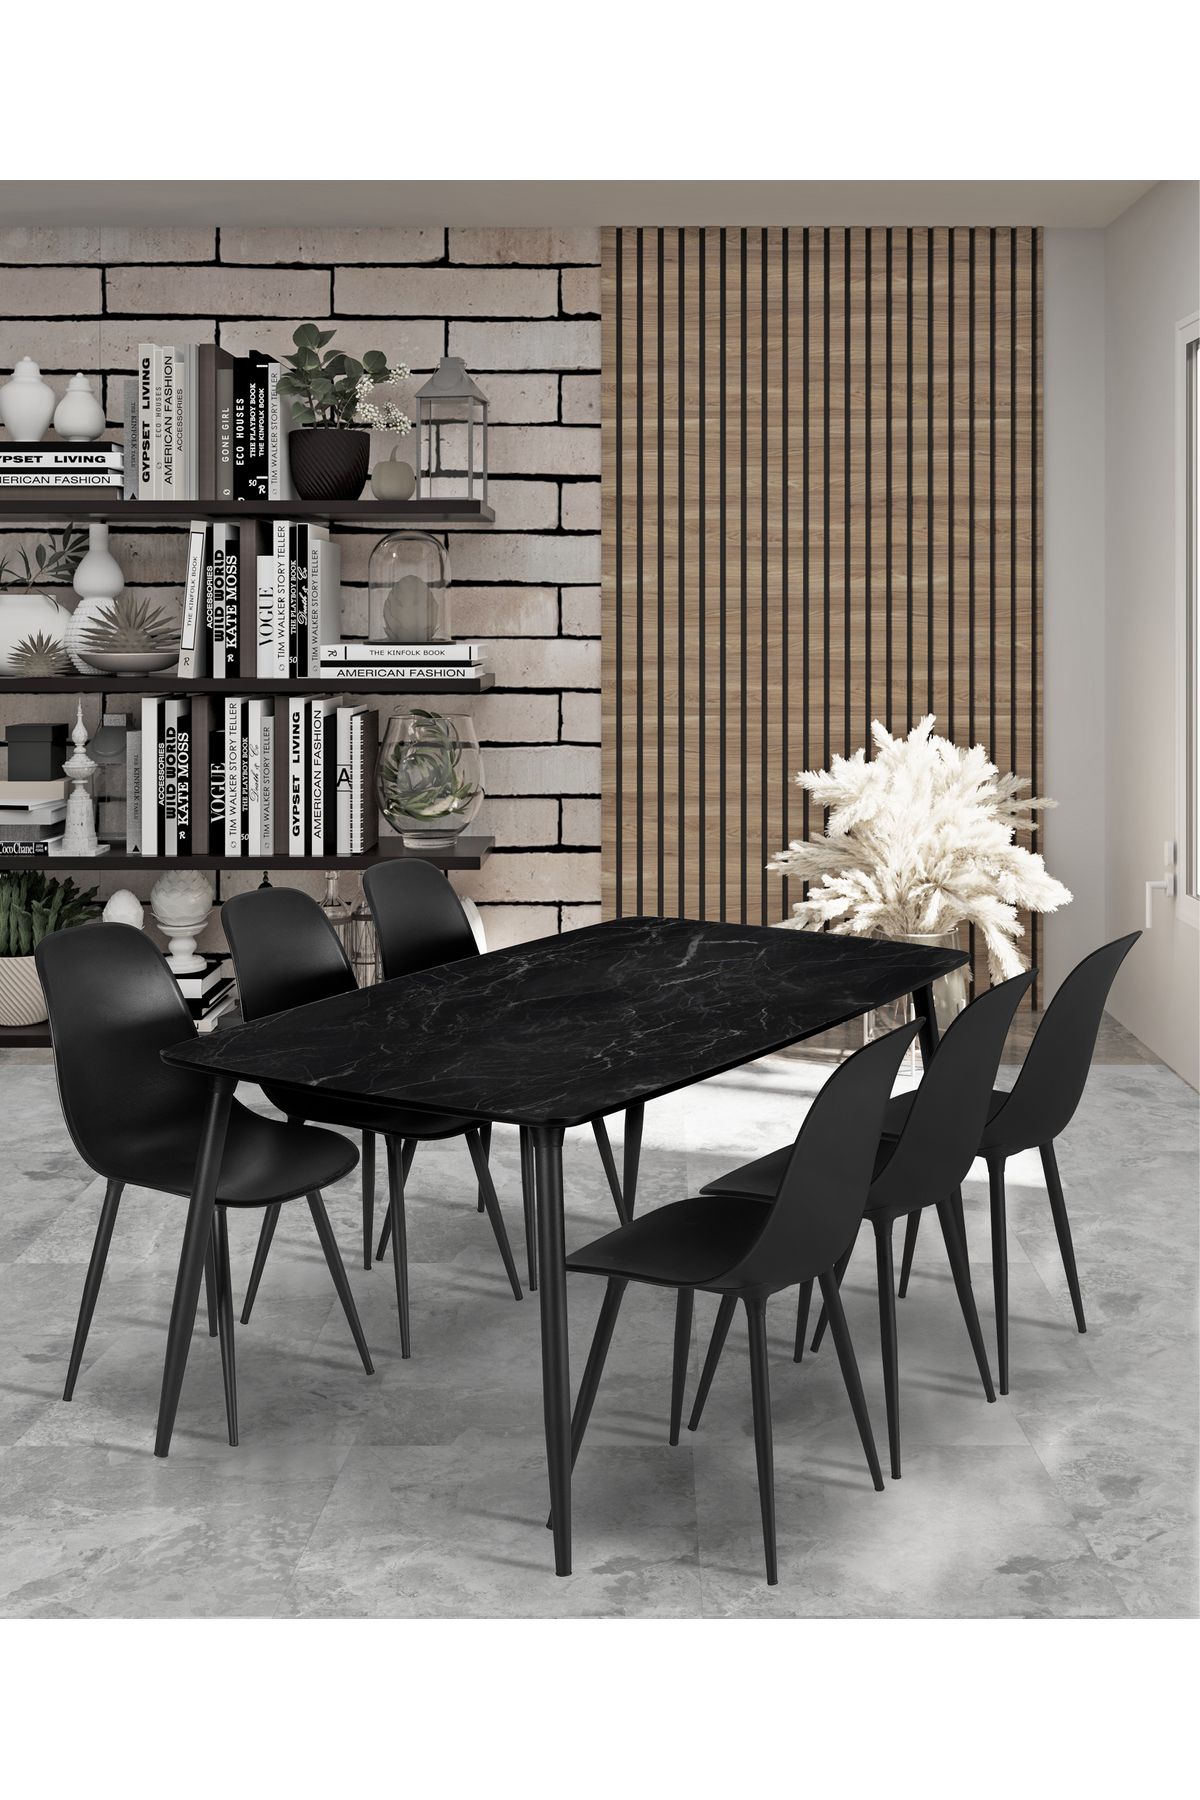 Estelia Yemek Masası Mutfak Masası 90x167 Cm Metal Ayaklı Siyah Masa, 6 Adet Abant Metal Ayaklı Sandalye